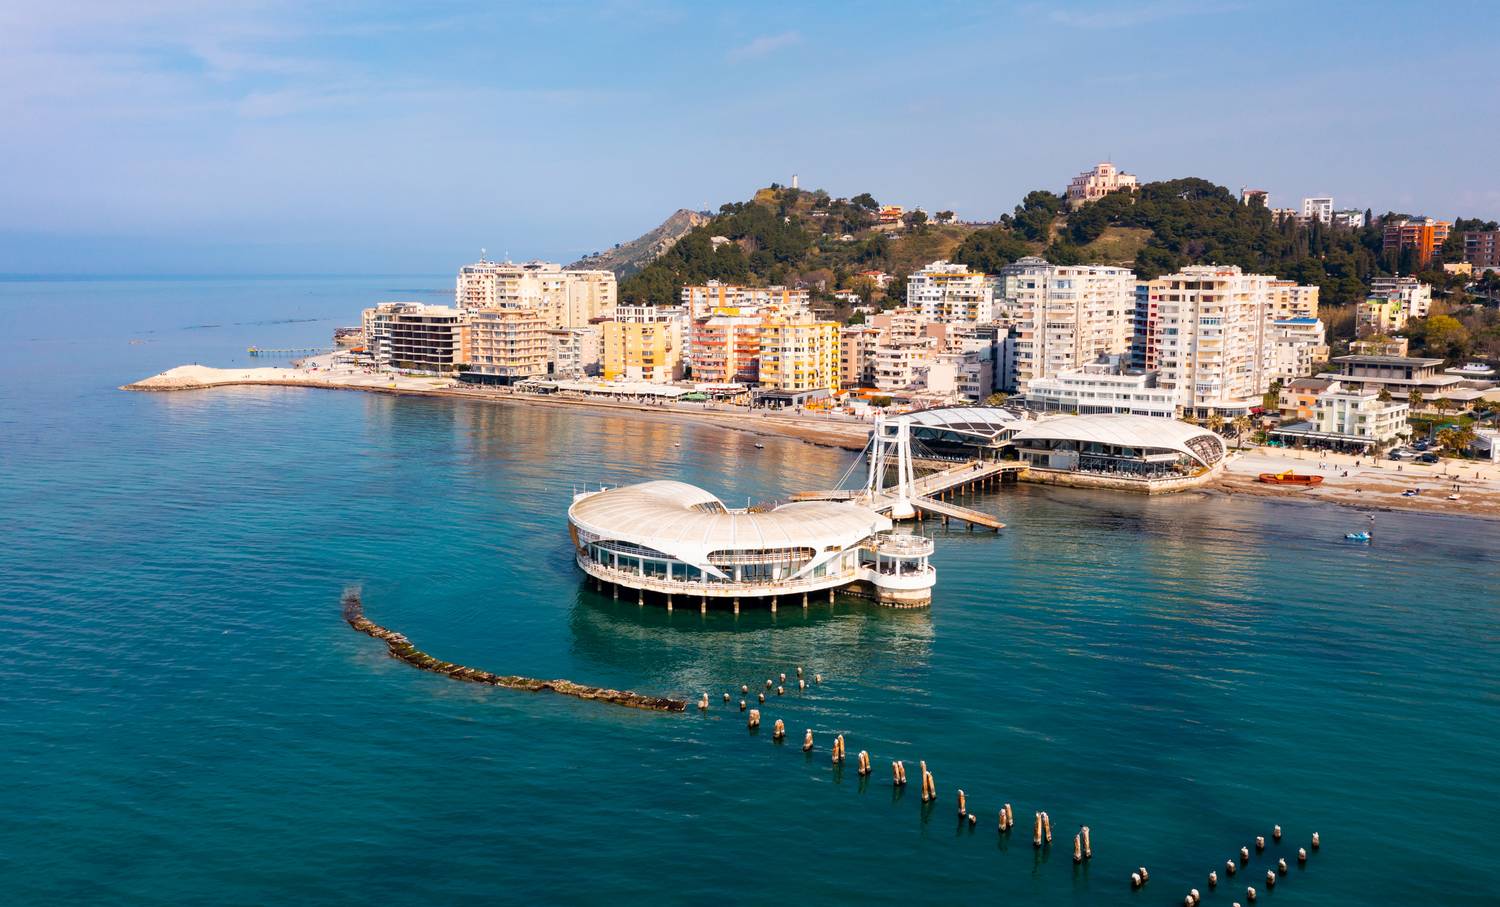 Aki imádja az Adriai-tenger szépségét, annak garantáltan tetszeni fog Albánia gyönyörű tengerparti városa, Durrës is. Az albán Las Vegasnak nevezett kikötőváros 12 és fél óra alatt érhető el autóval, központja pazar, noha meglehetősen zsúfolt nyáron.